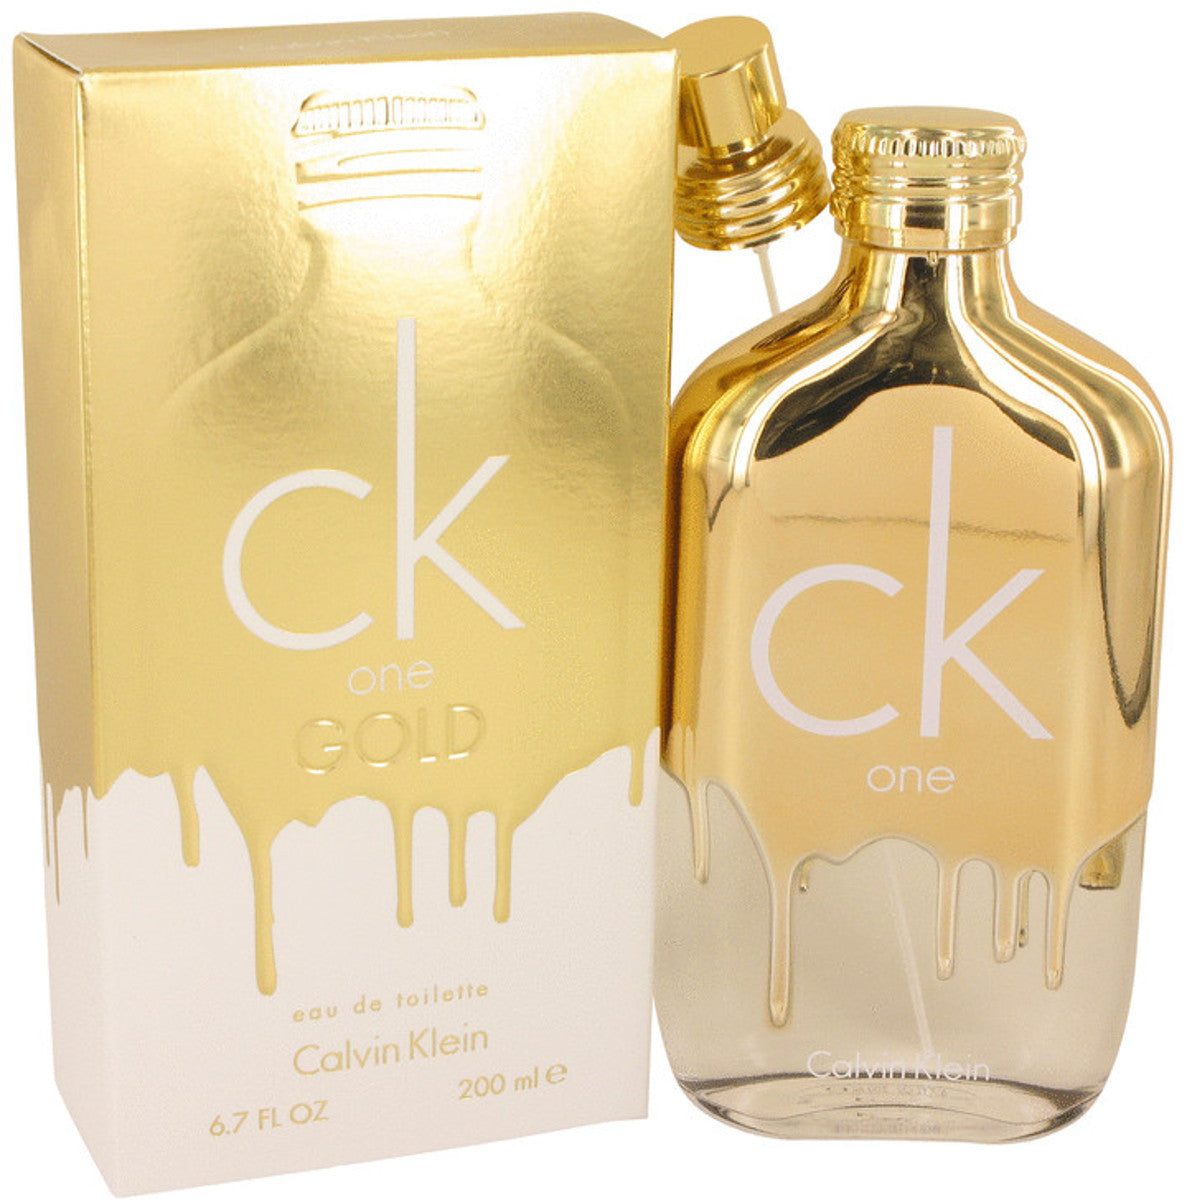 CK ONE GOLD by Calvin Klein Unisex EDT 6.7 / 6.8 oz New in Box